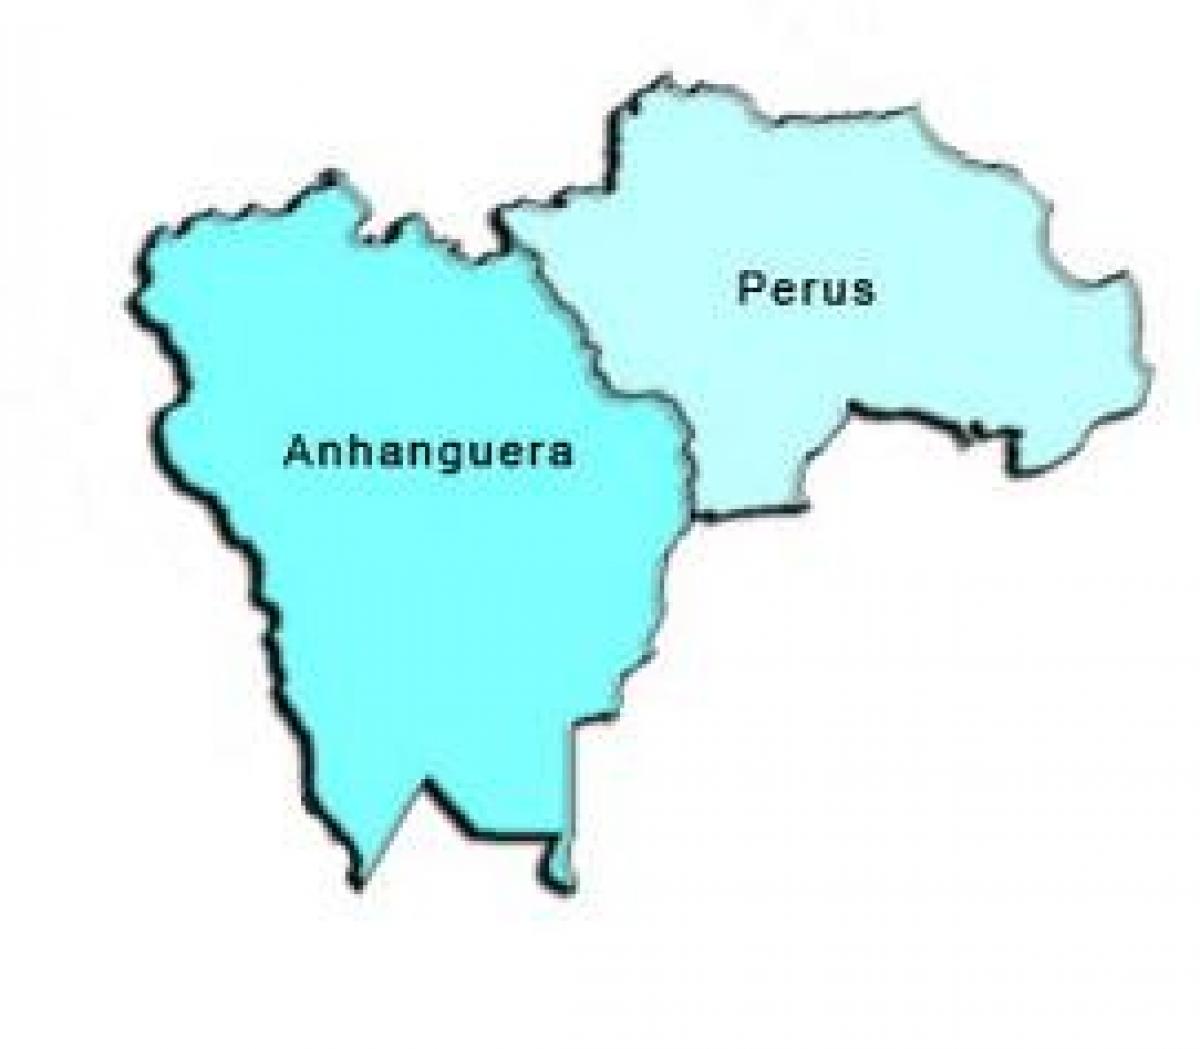 Bản đồ của Peru phụ tỉnh